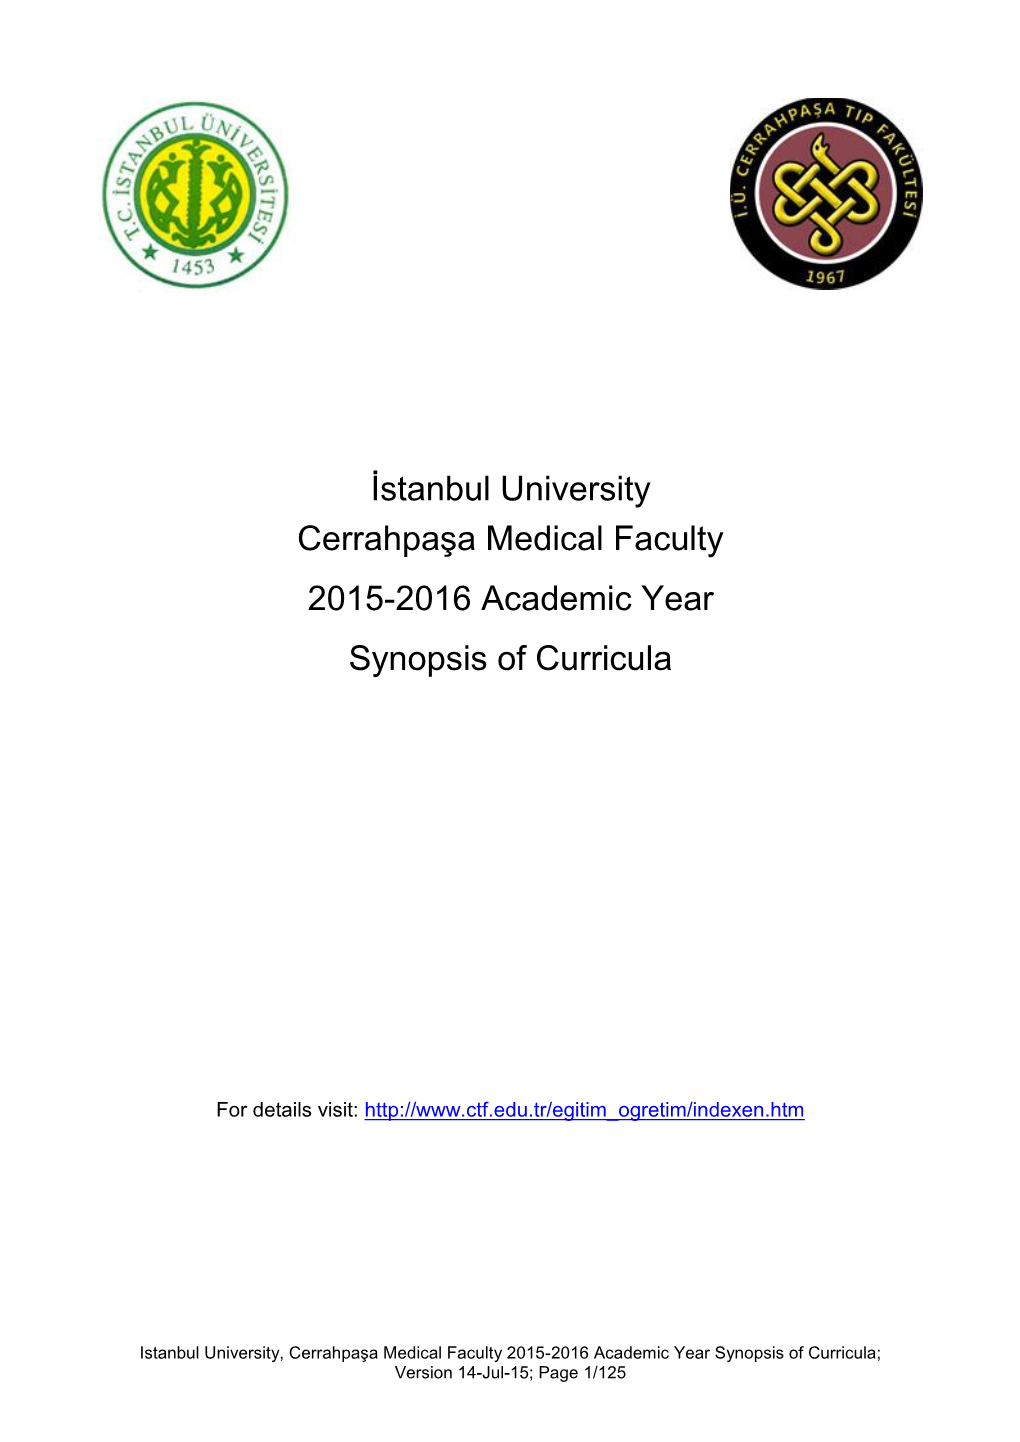 İstanbul University Cerrahpaşa Medical Faculty 2015-2016 Academic Year Synopsis of Curricula